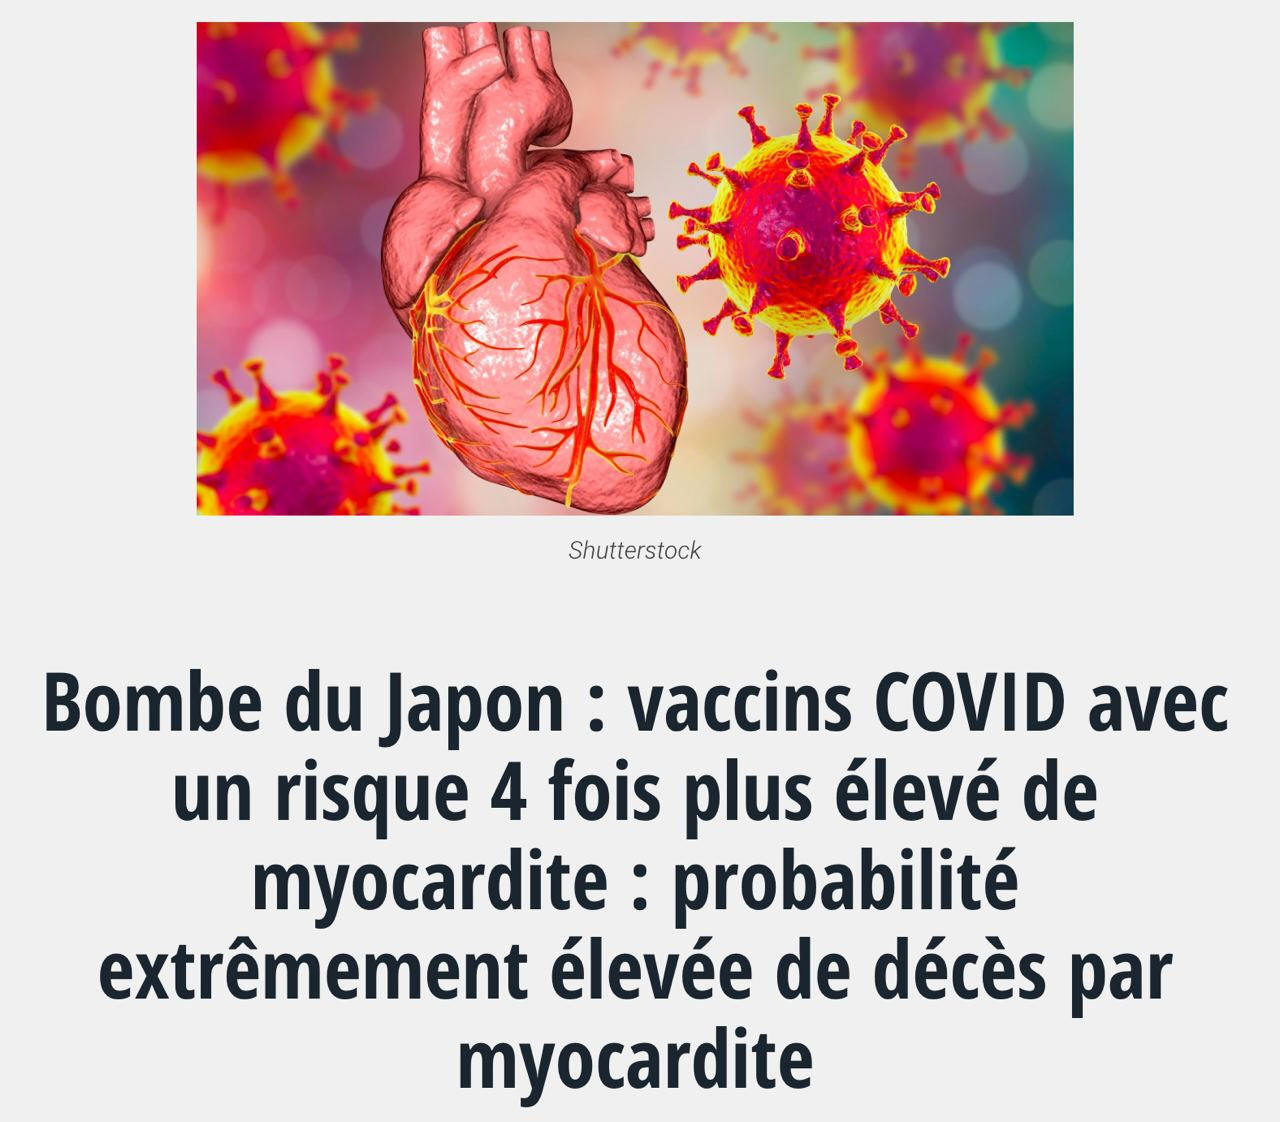 Etude au Japon vaccin covid et risque